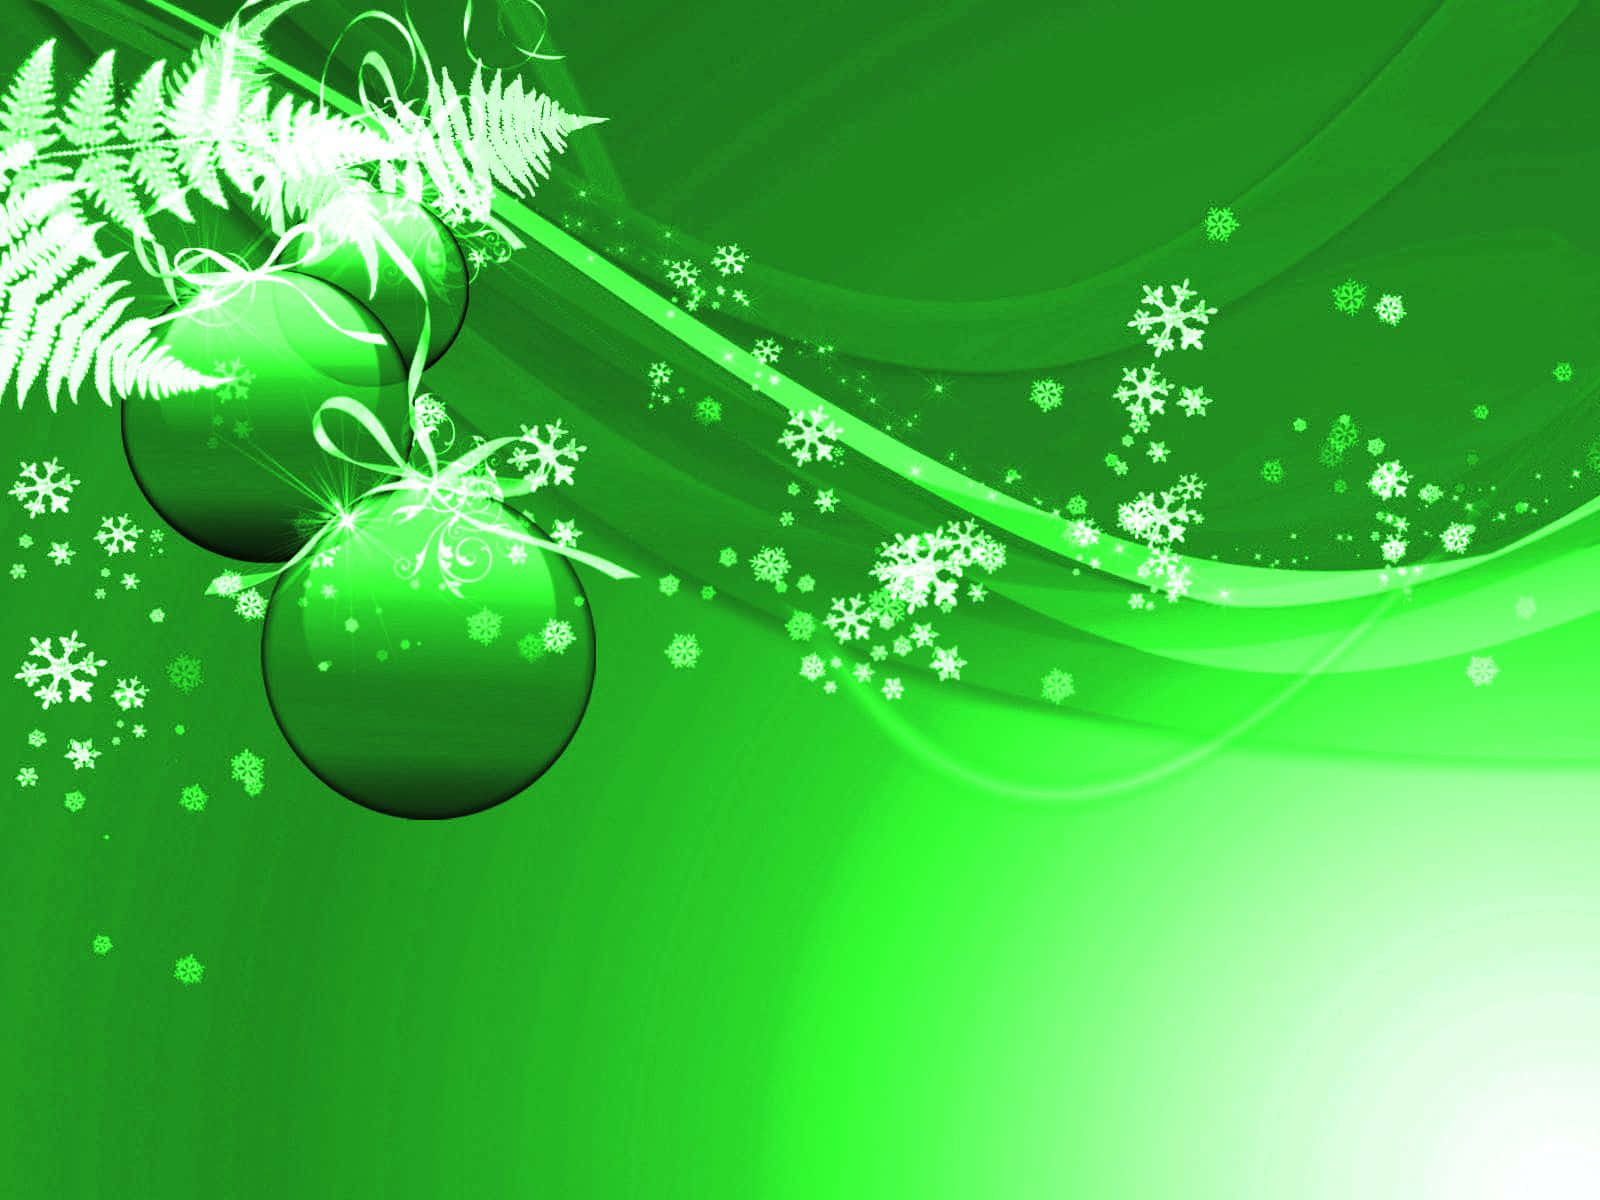 Celebreuma Época Festiva E Sustentável Com Um Natal Verde. Papel de Parede